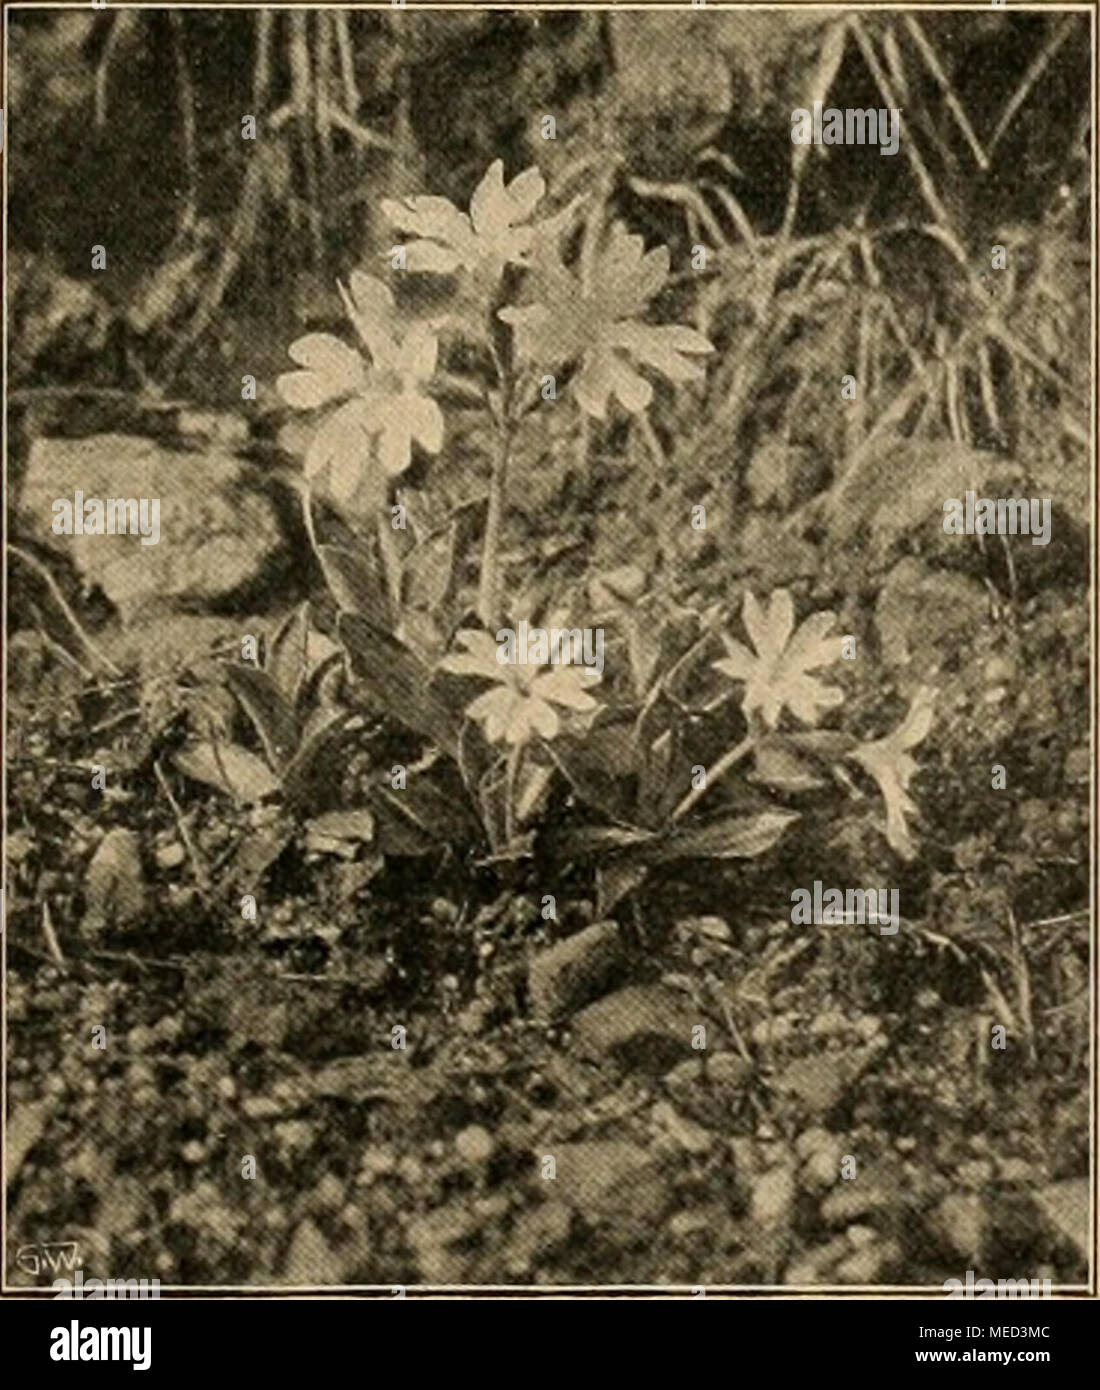 . Die Gartenwelt . Primula marginata im Pflanzcngartcii zu Schandau. wohl auch nach Freilich, schon hier zeigt sich zuweilen die für weniger der Herkunft günstige Lagen noch viel häufigere Erscheinung, daß diese undderAbstam- hochalpinen Primeln, wenn sie erwartungsvoll Knospen an- mung, recht ver- gesetzt haben, noch im Herbst aufs neue treiben und blühen, schieden. Unsere Vegetationsperiode ist ihnen eben zu lang. Des- In der son- halb wird man im Freiland oft mit Topfexemplaren, die man nigen Tiefland- im Sommer möglichst kühl stellen, schattieren und viel spritzen ebene ist ihre kann, bess Stock Photo